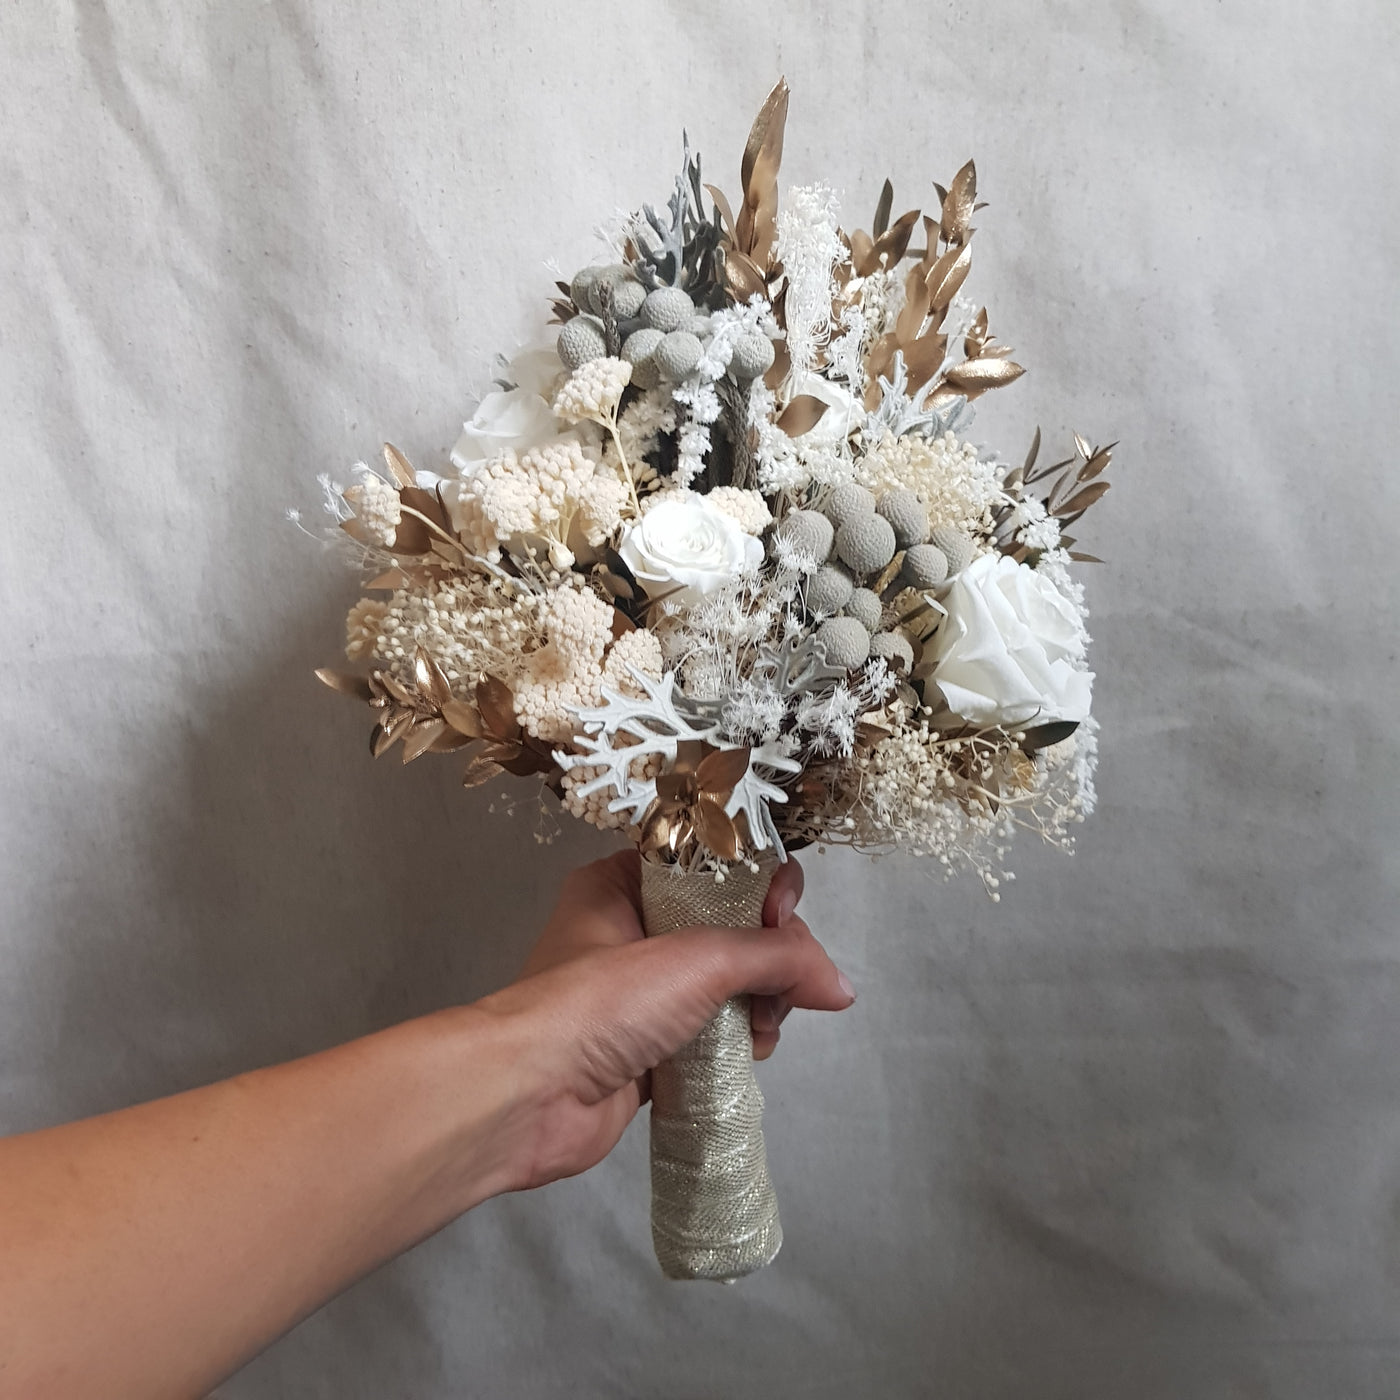 Bouquet de mariée en fleurs stabilisées éternelles blanc composé de Rose, Mini Gypsophile, Achilée, Cineraria, Ruscus, Brunia. Vu du côté gauche